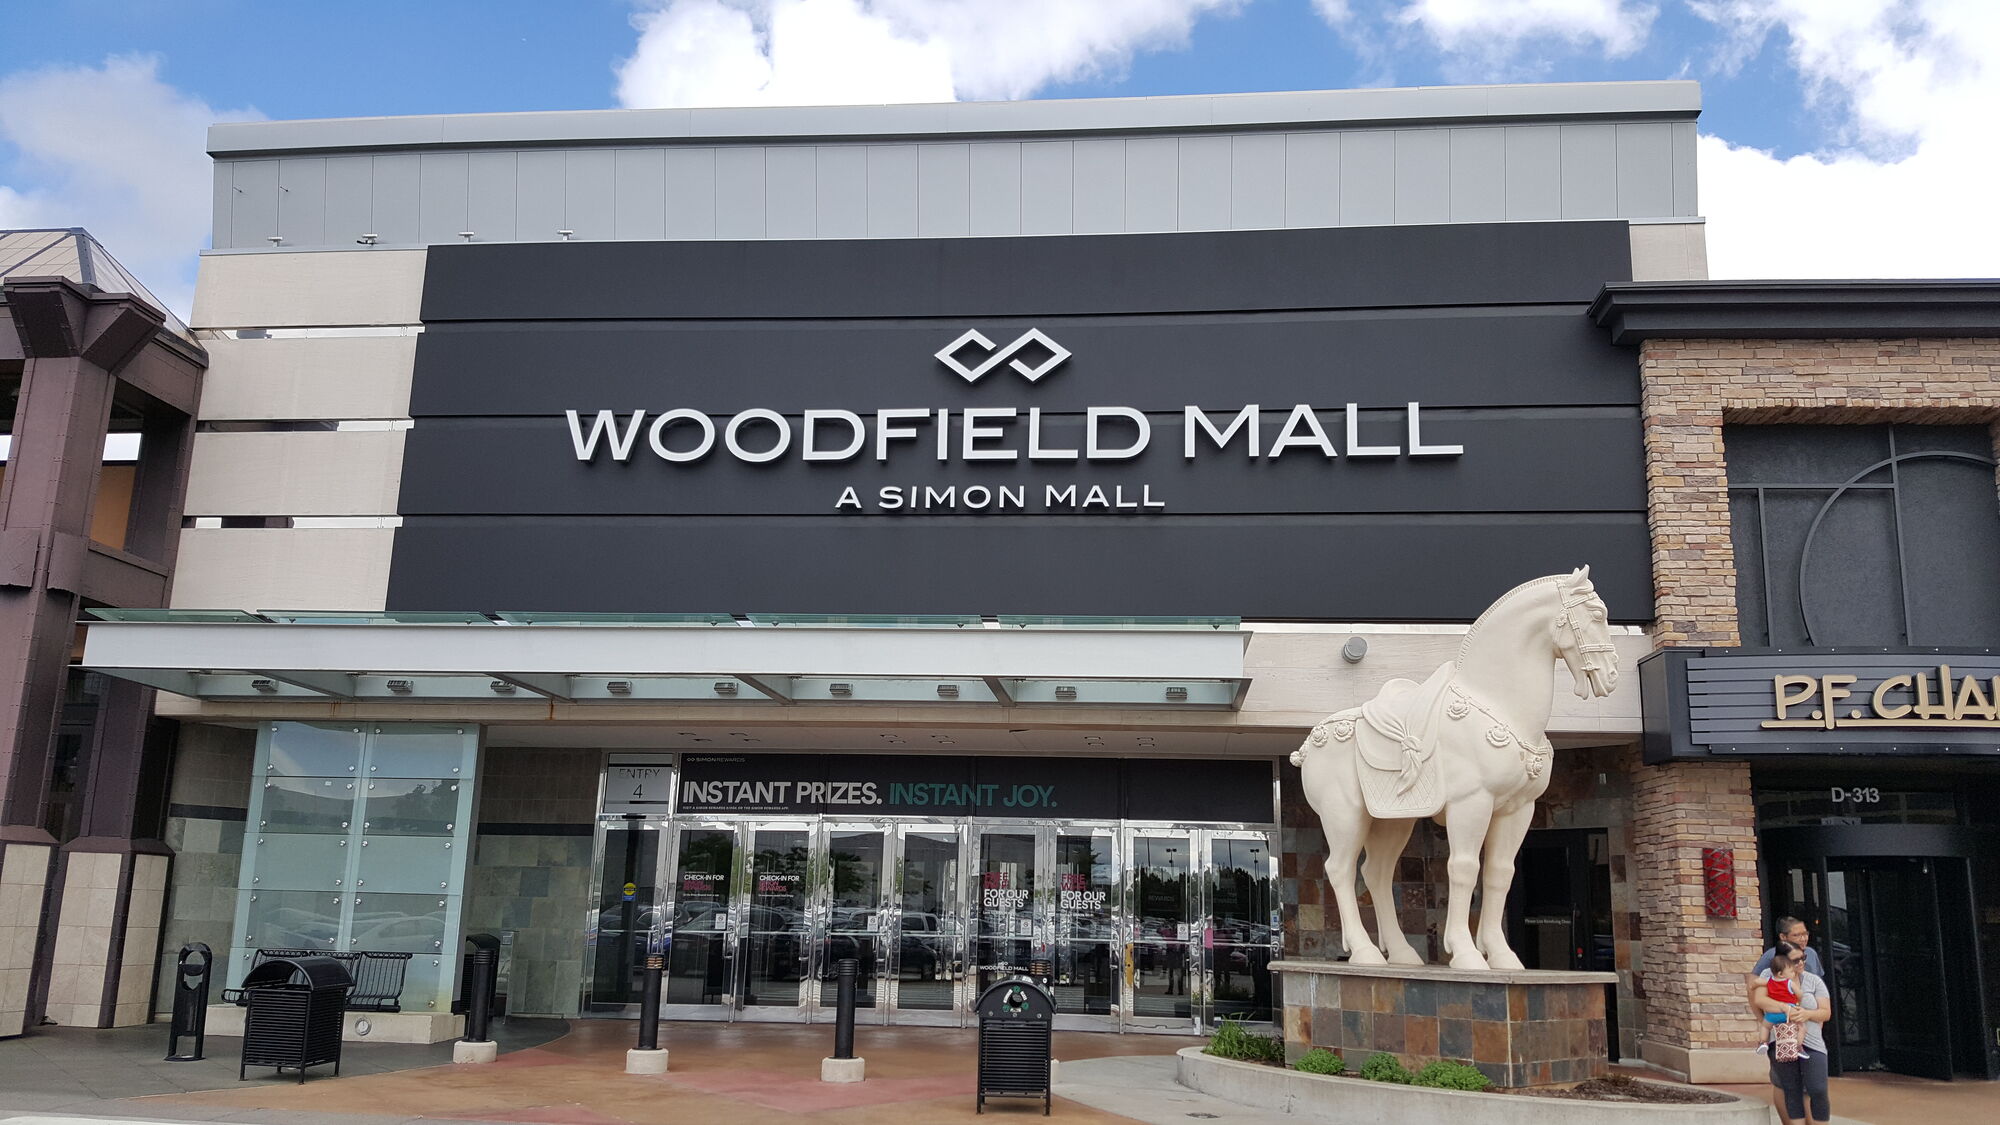 Woodfield Mall Malls and Retail Wiki Fandom